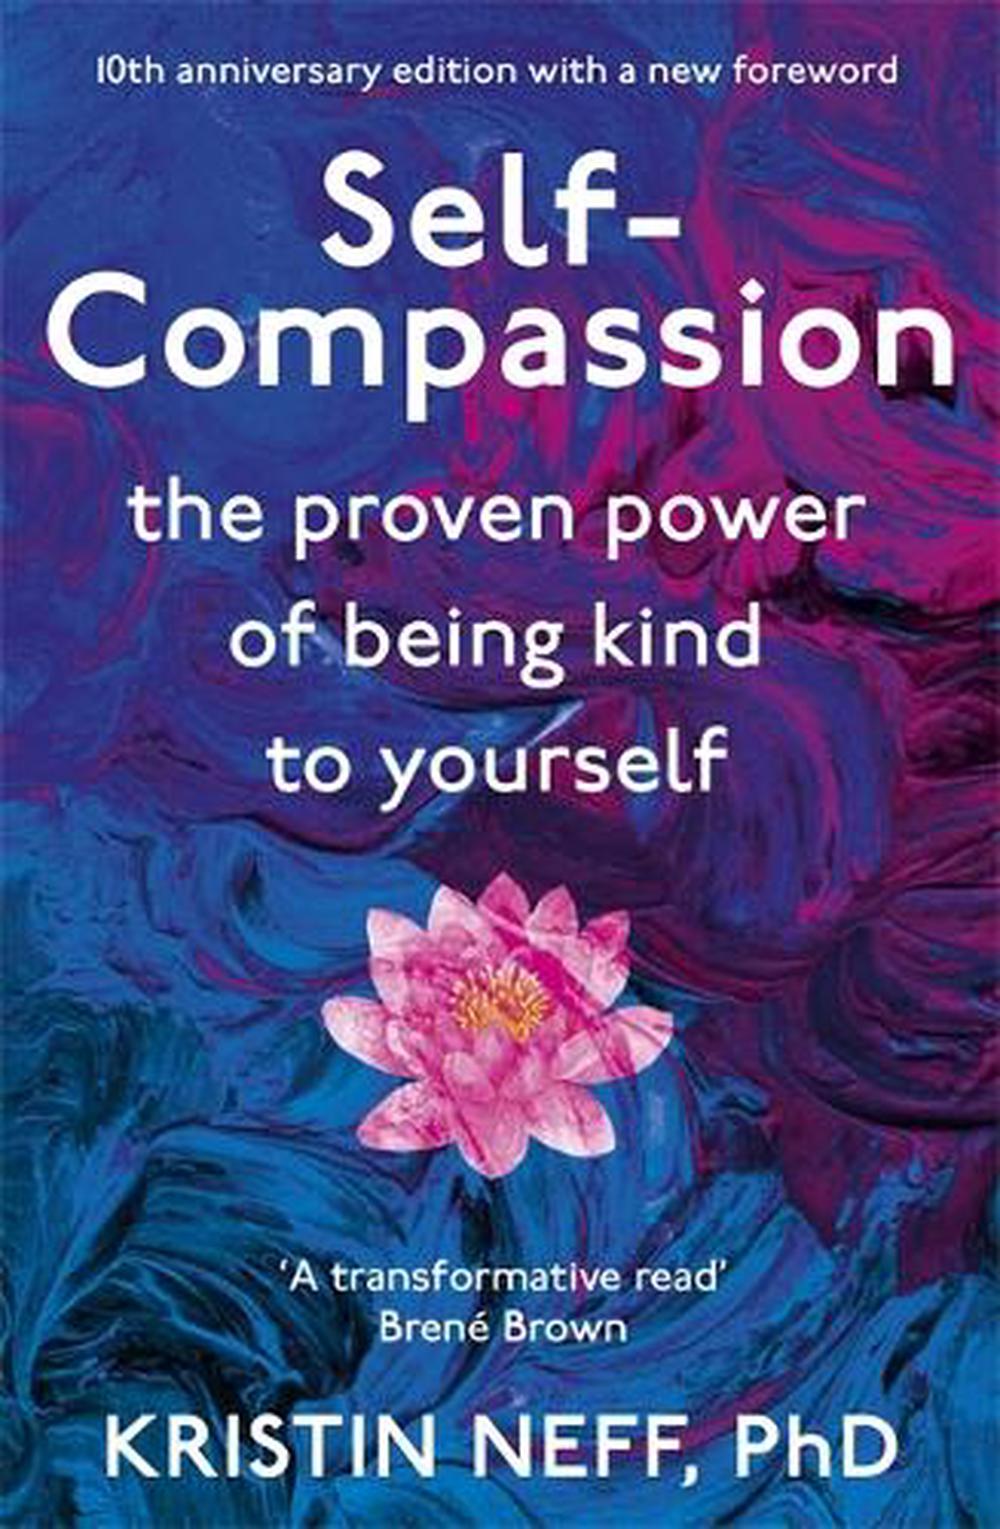 Self-Compassion book by Kristin Neff. 